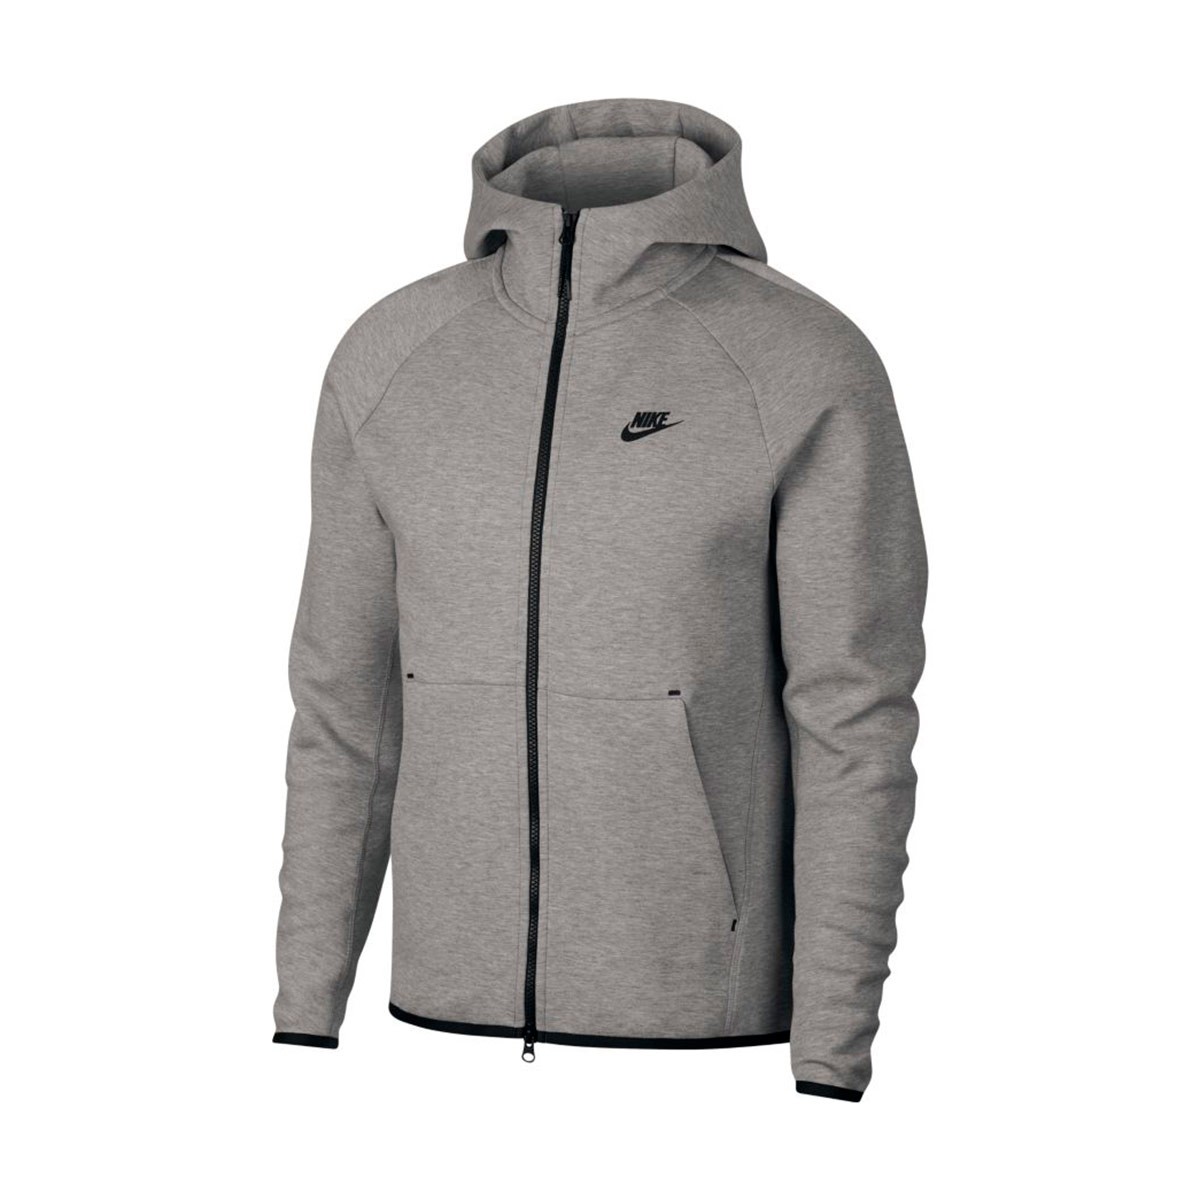 Jacket Nike Sportswear Tech Fleece 2019 Dark grey heather-Black 